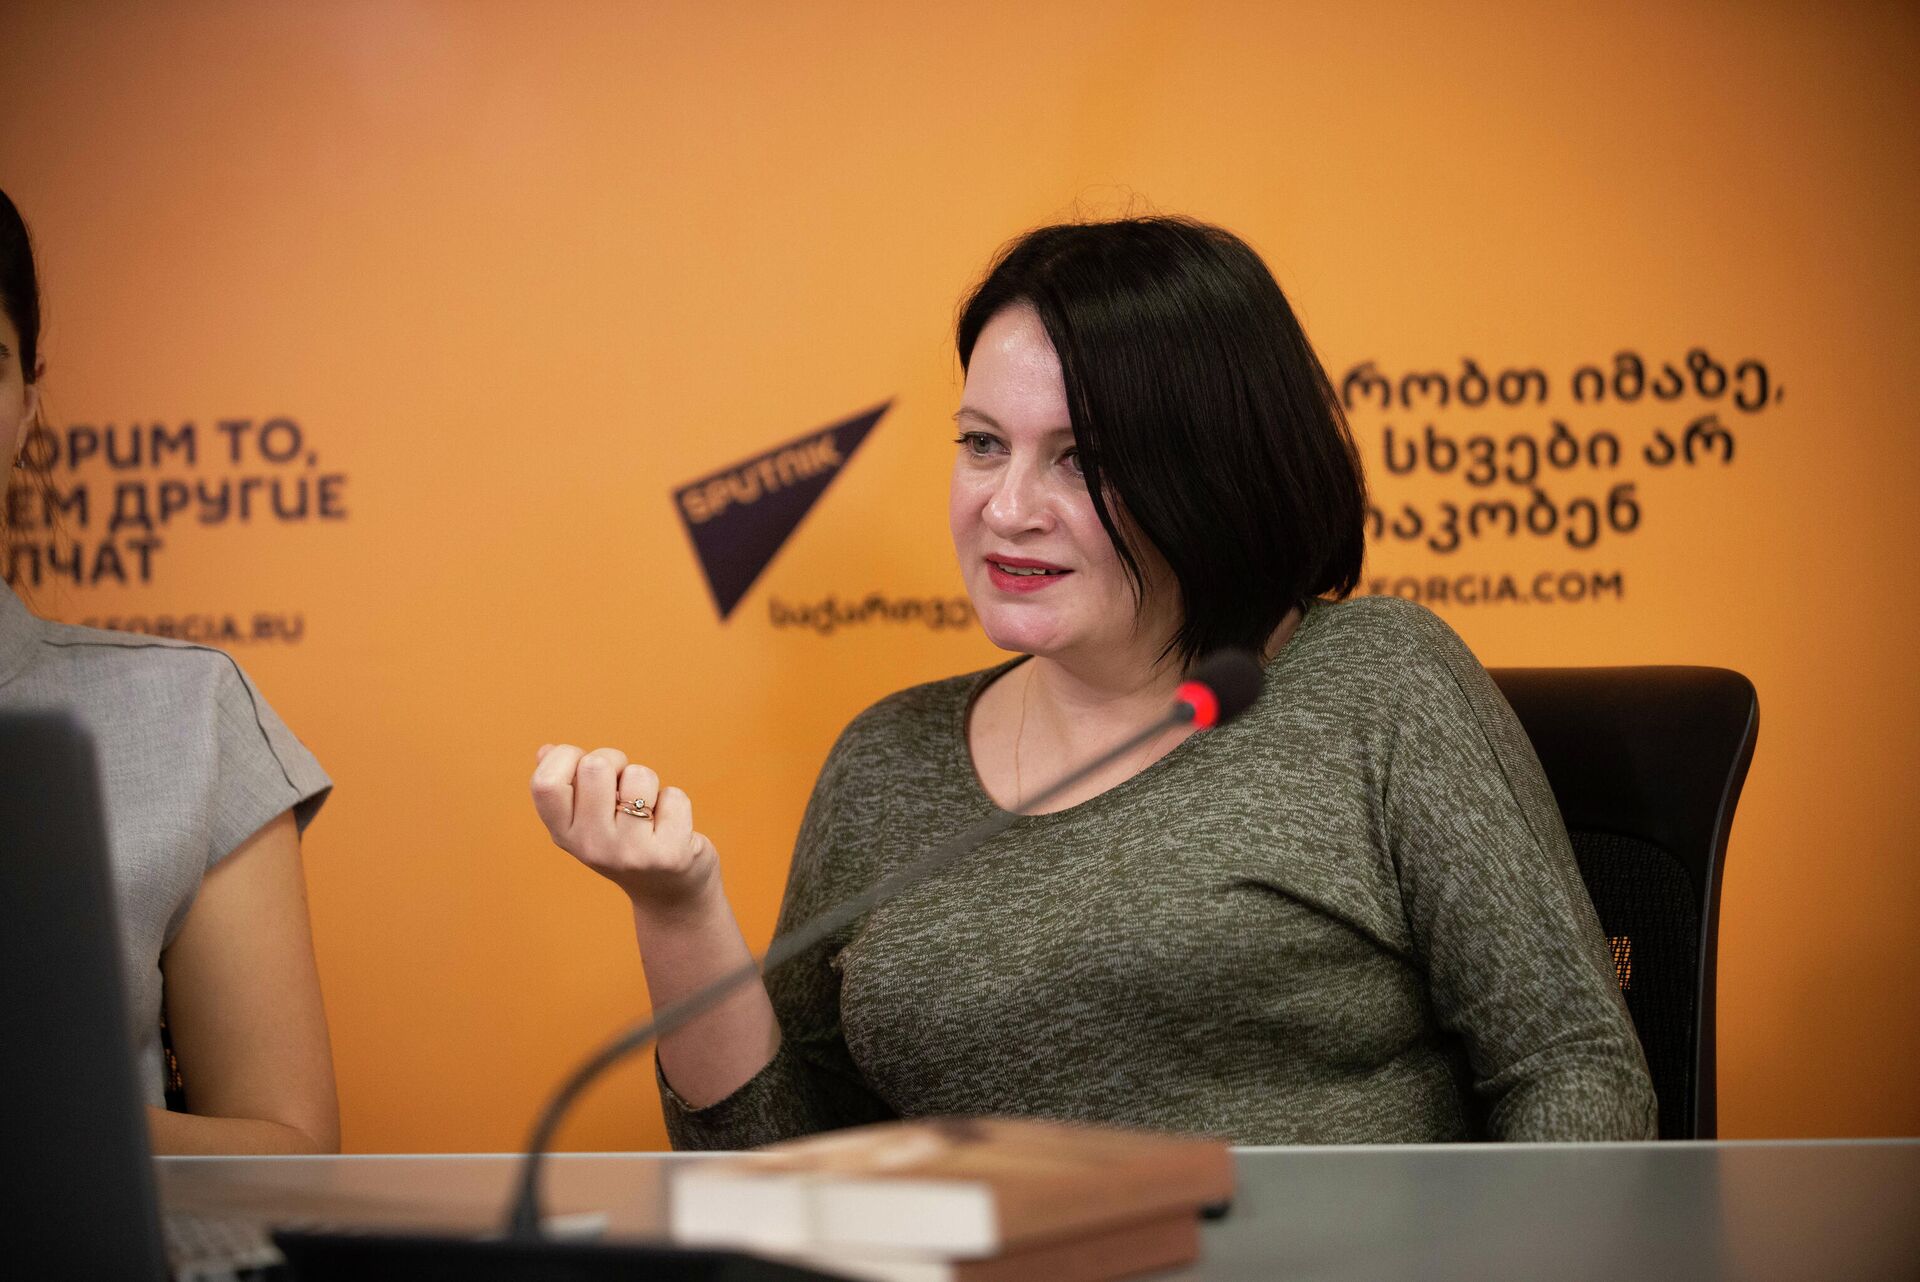 Анастасия Хатиашвили - Писательница и колумнист Sputnik Грузия  - Sputnik საქართველო, 1920, 26.11.2021